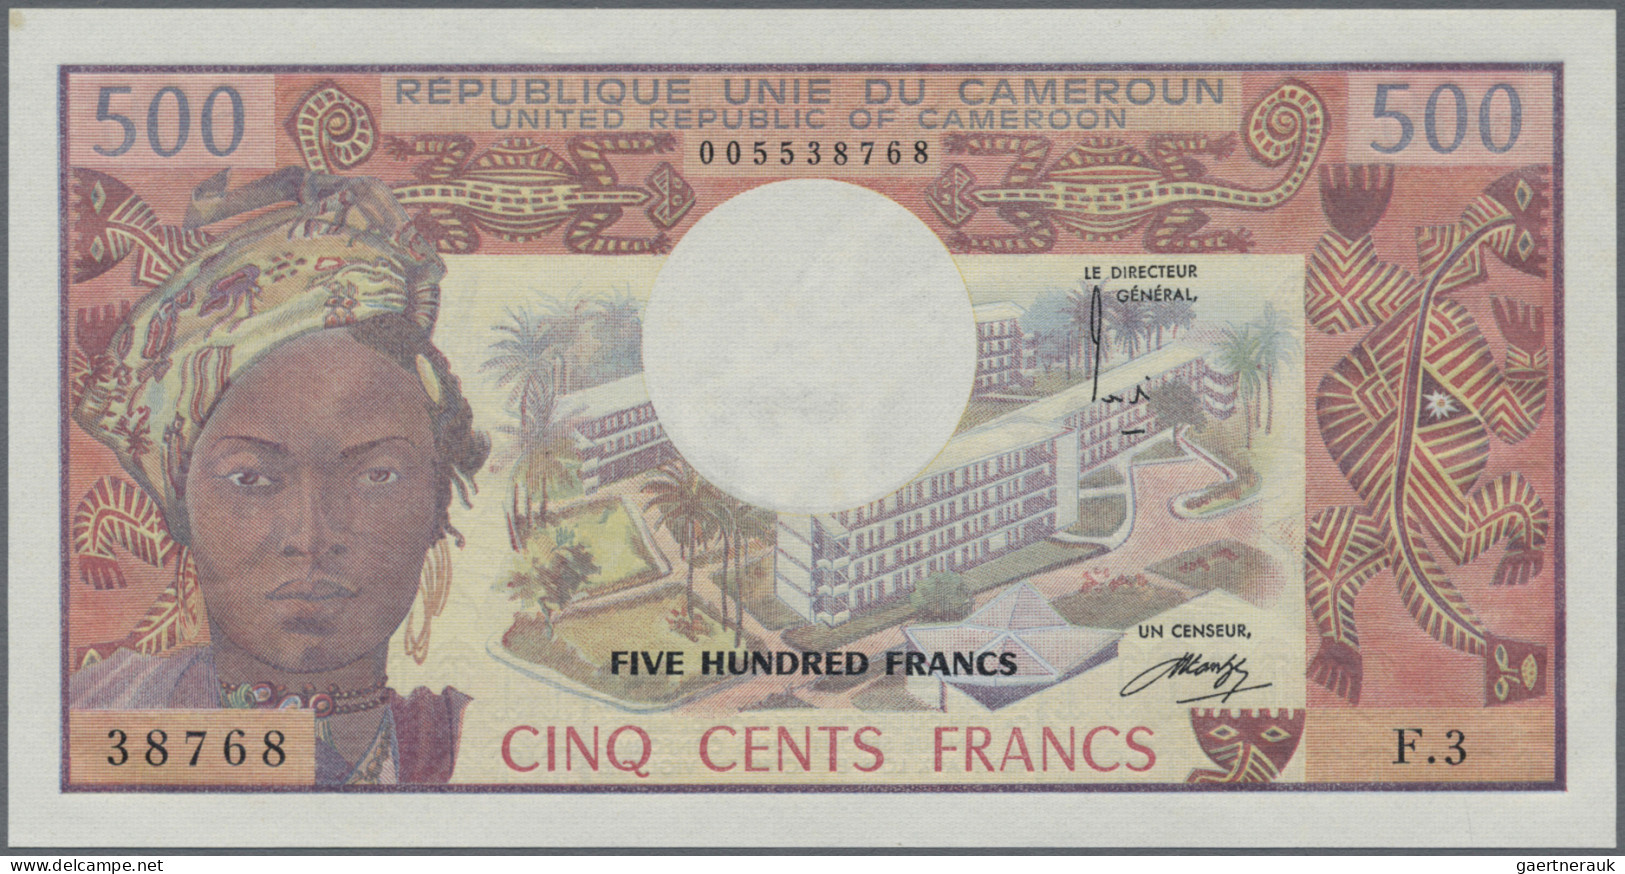 Cameroon: Banque Des États De L'Afrique Centrale - République Unie Du Cameroun, - Kamerun